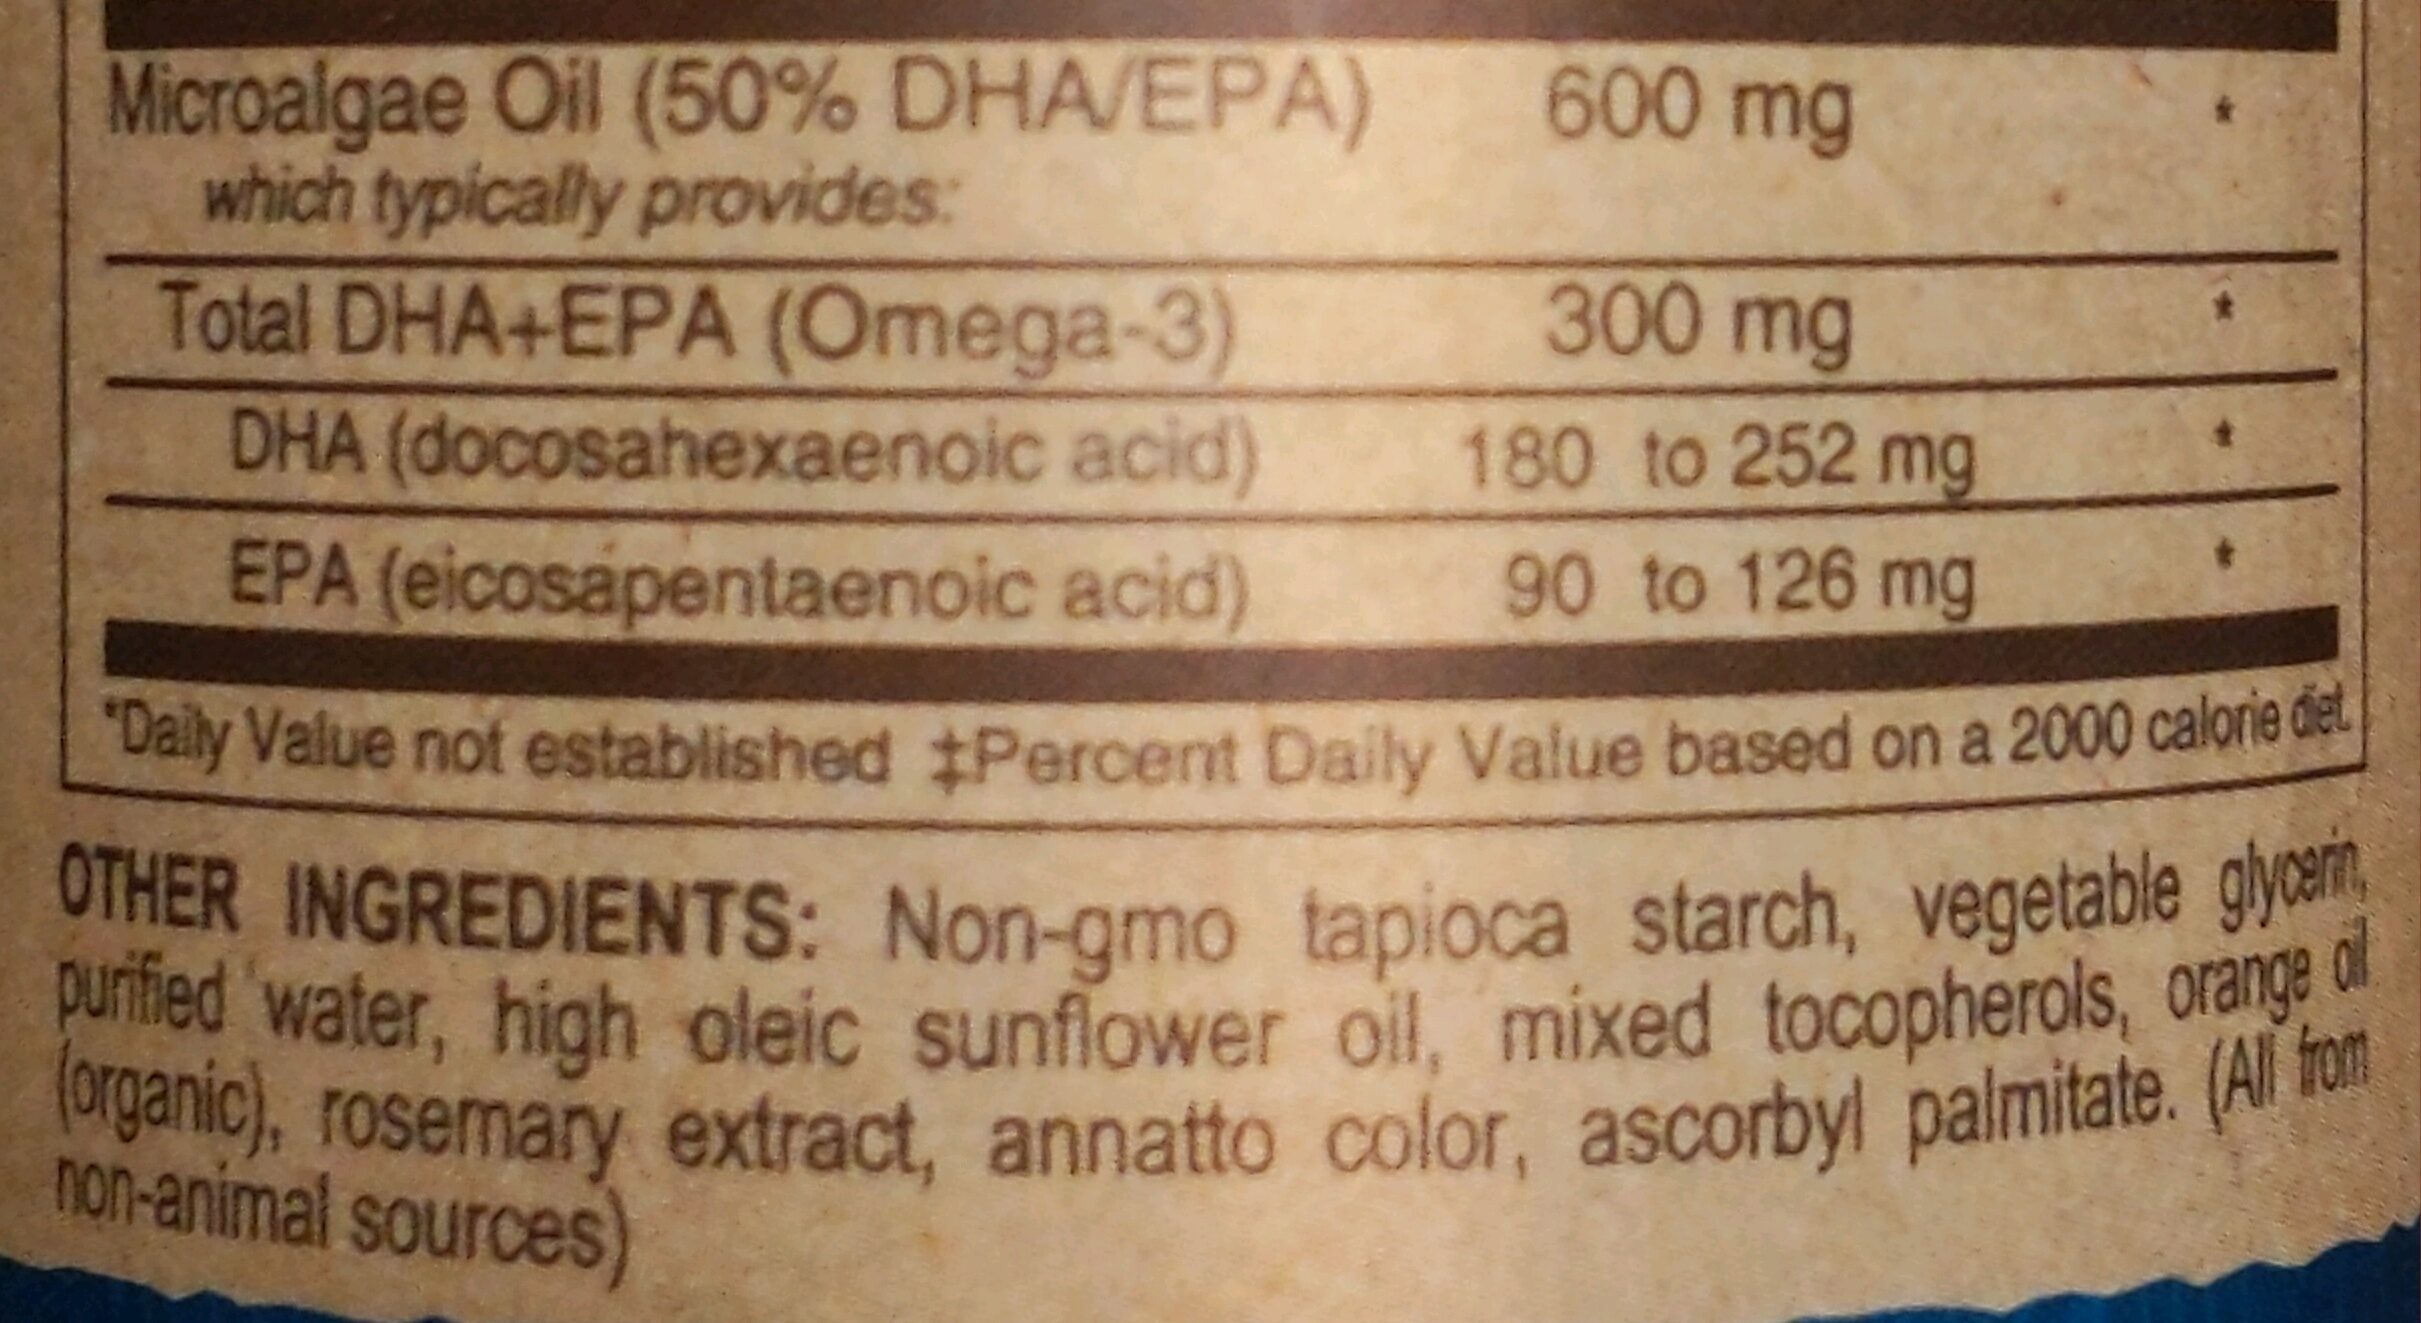 Vegan Omega-3 DHA-EPA 300 mg - Ingredients - en